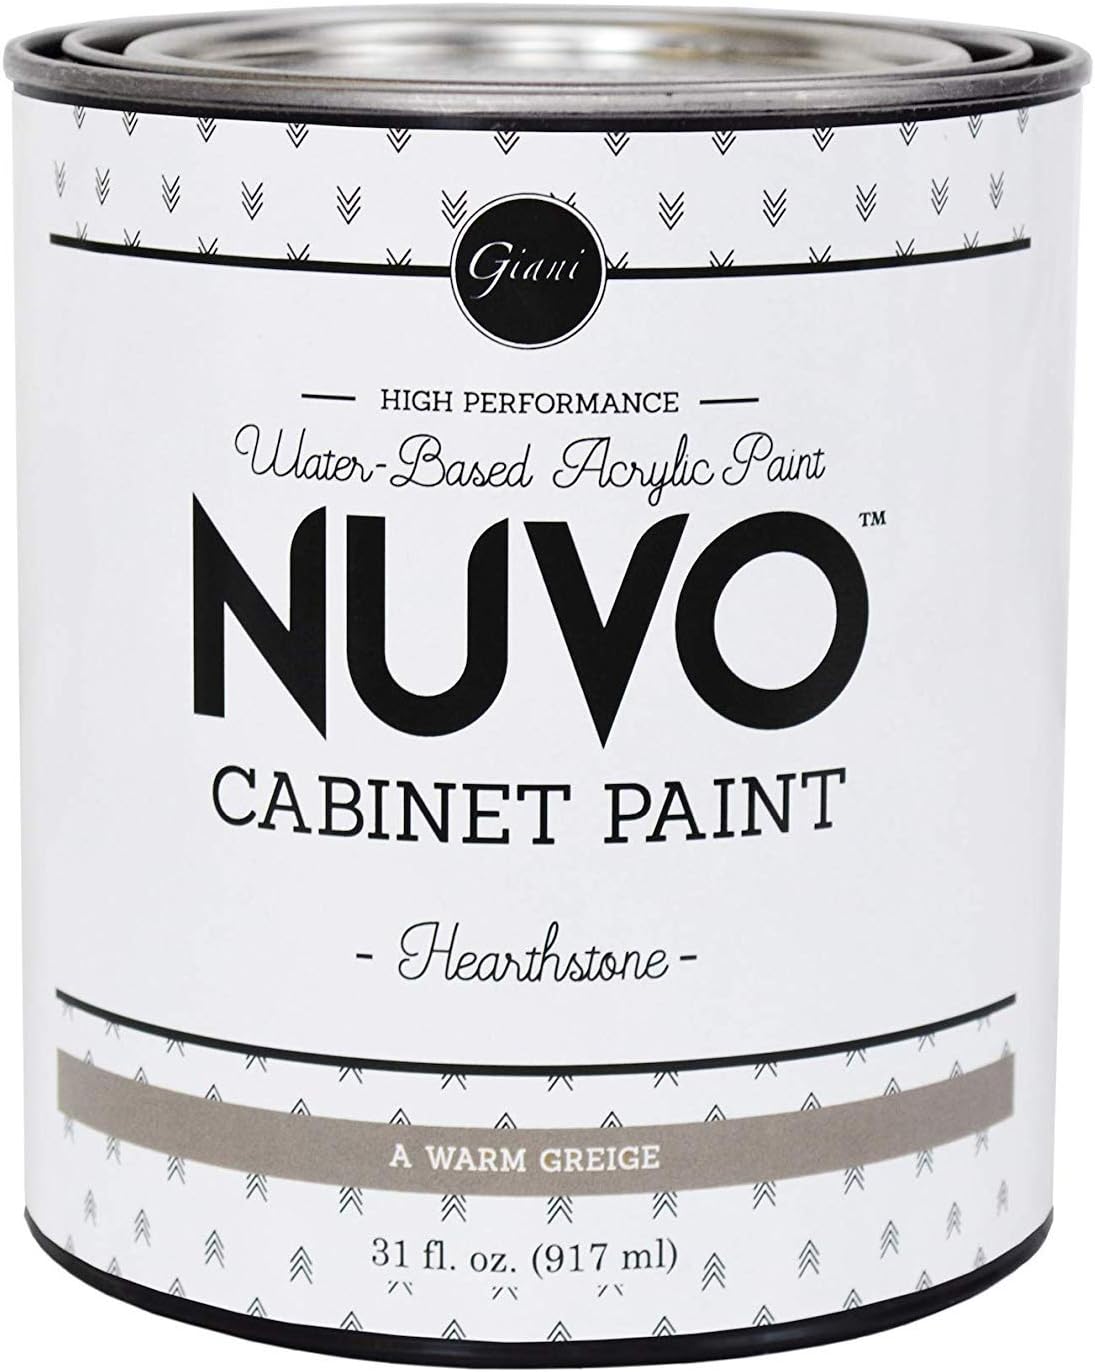 Nuvo Cabinet Paint Quart